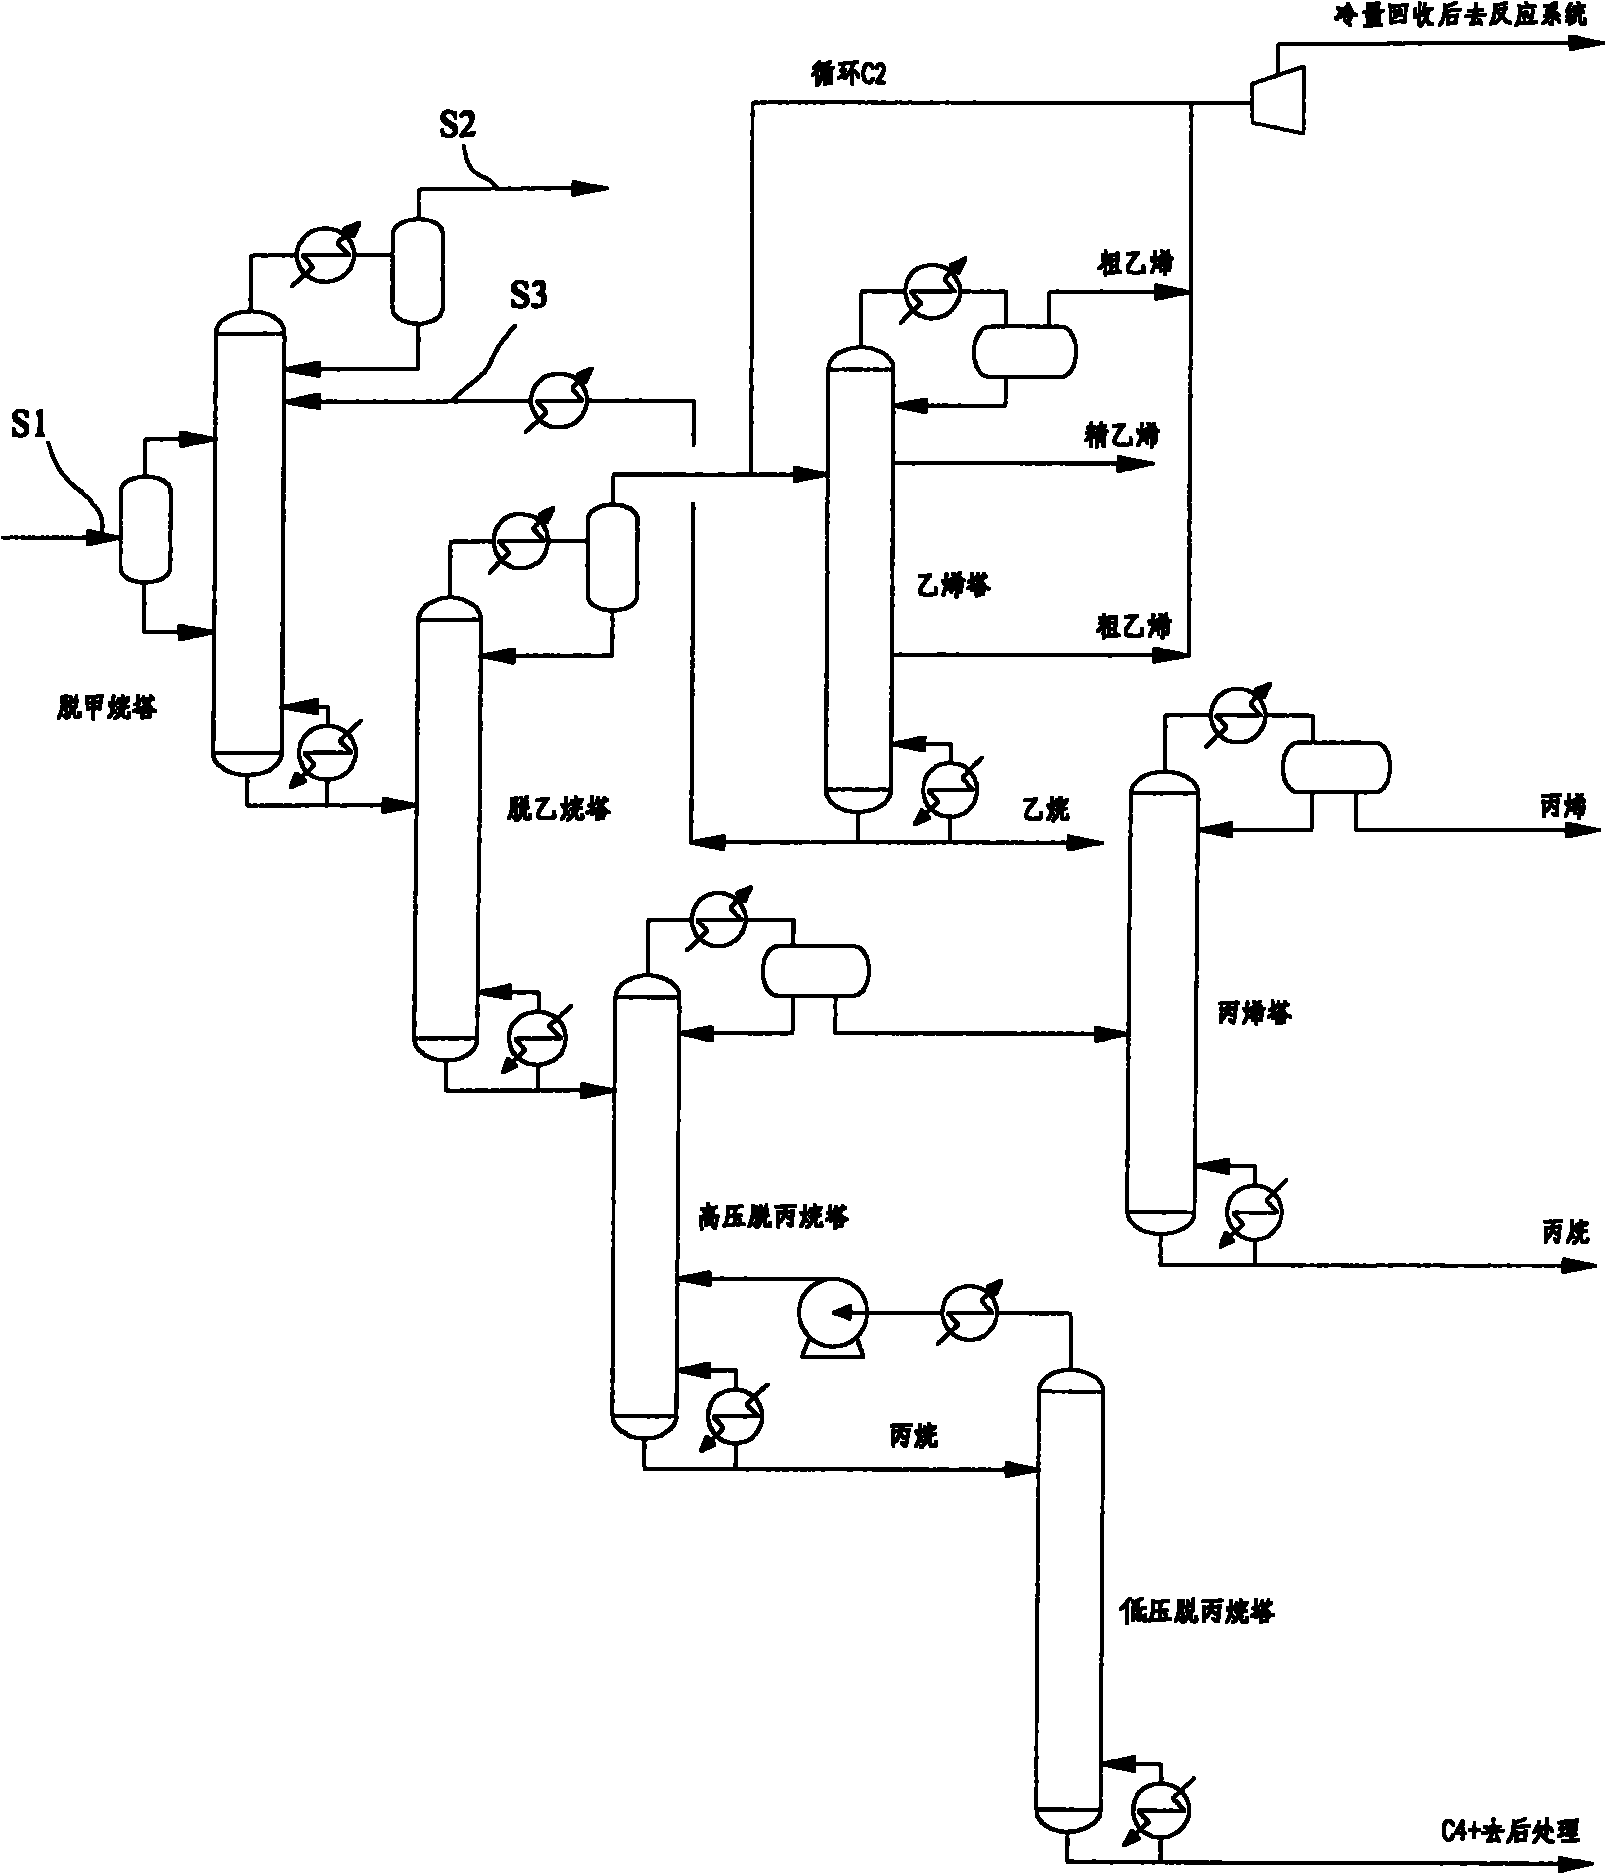 Method for separating low-carbon olefins